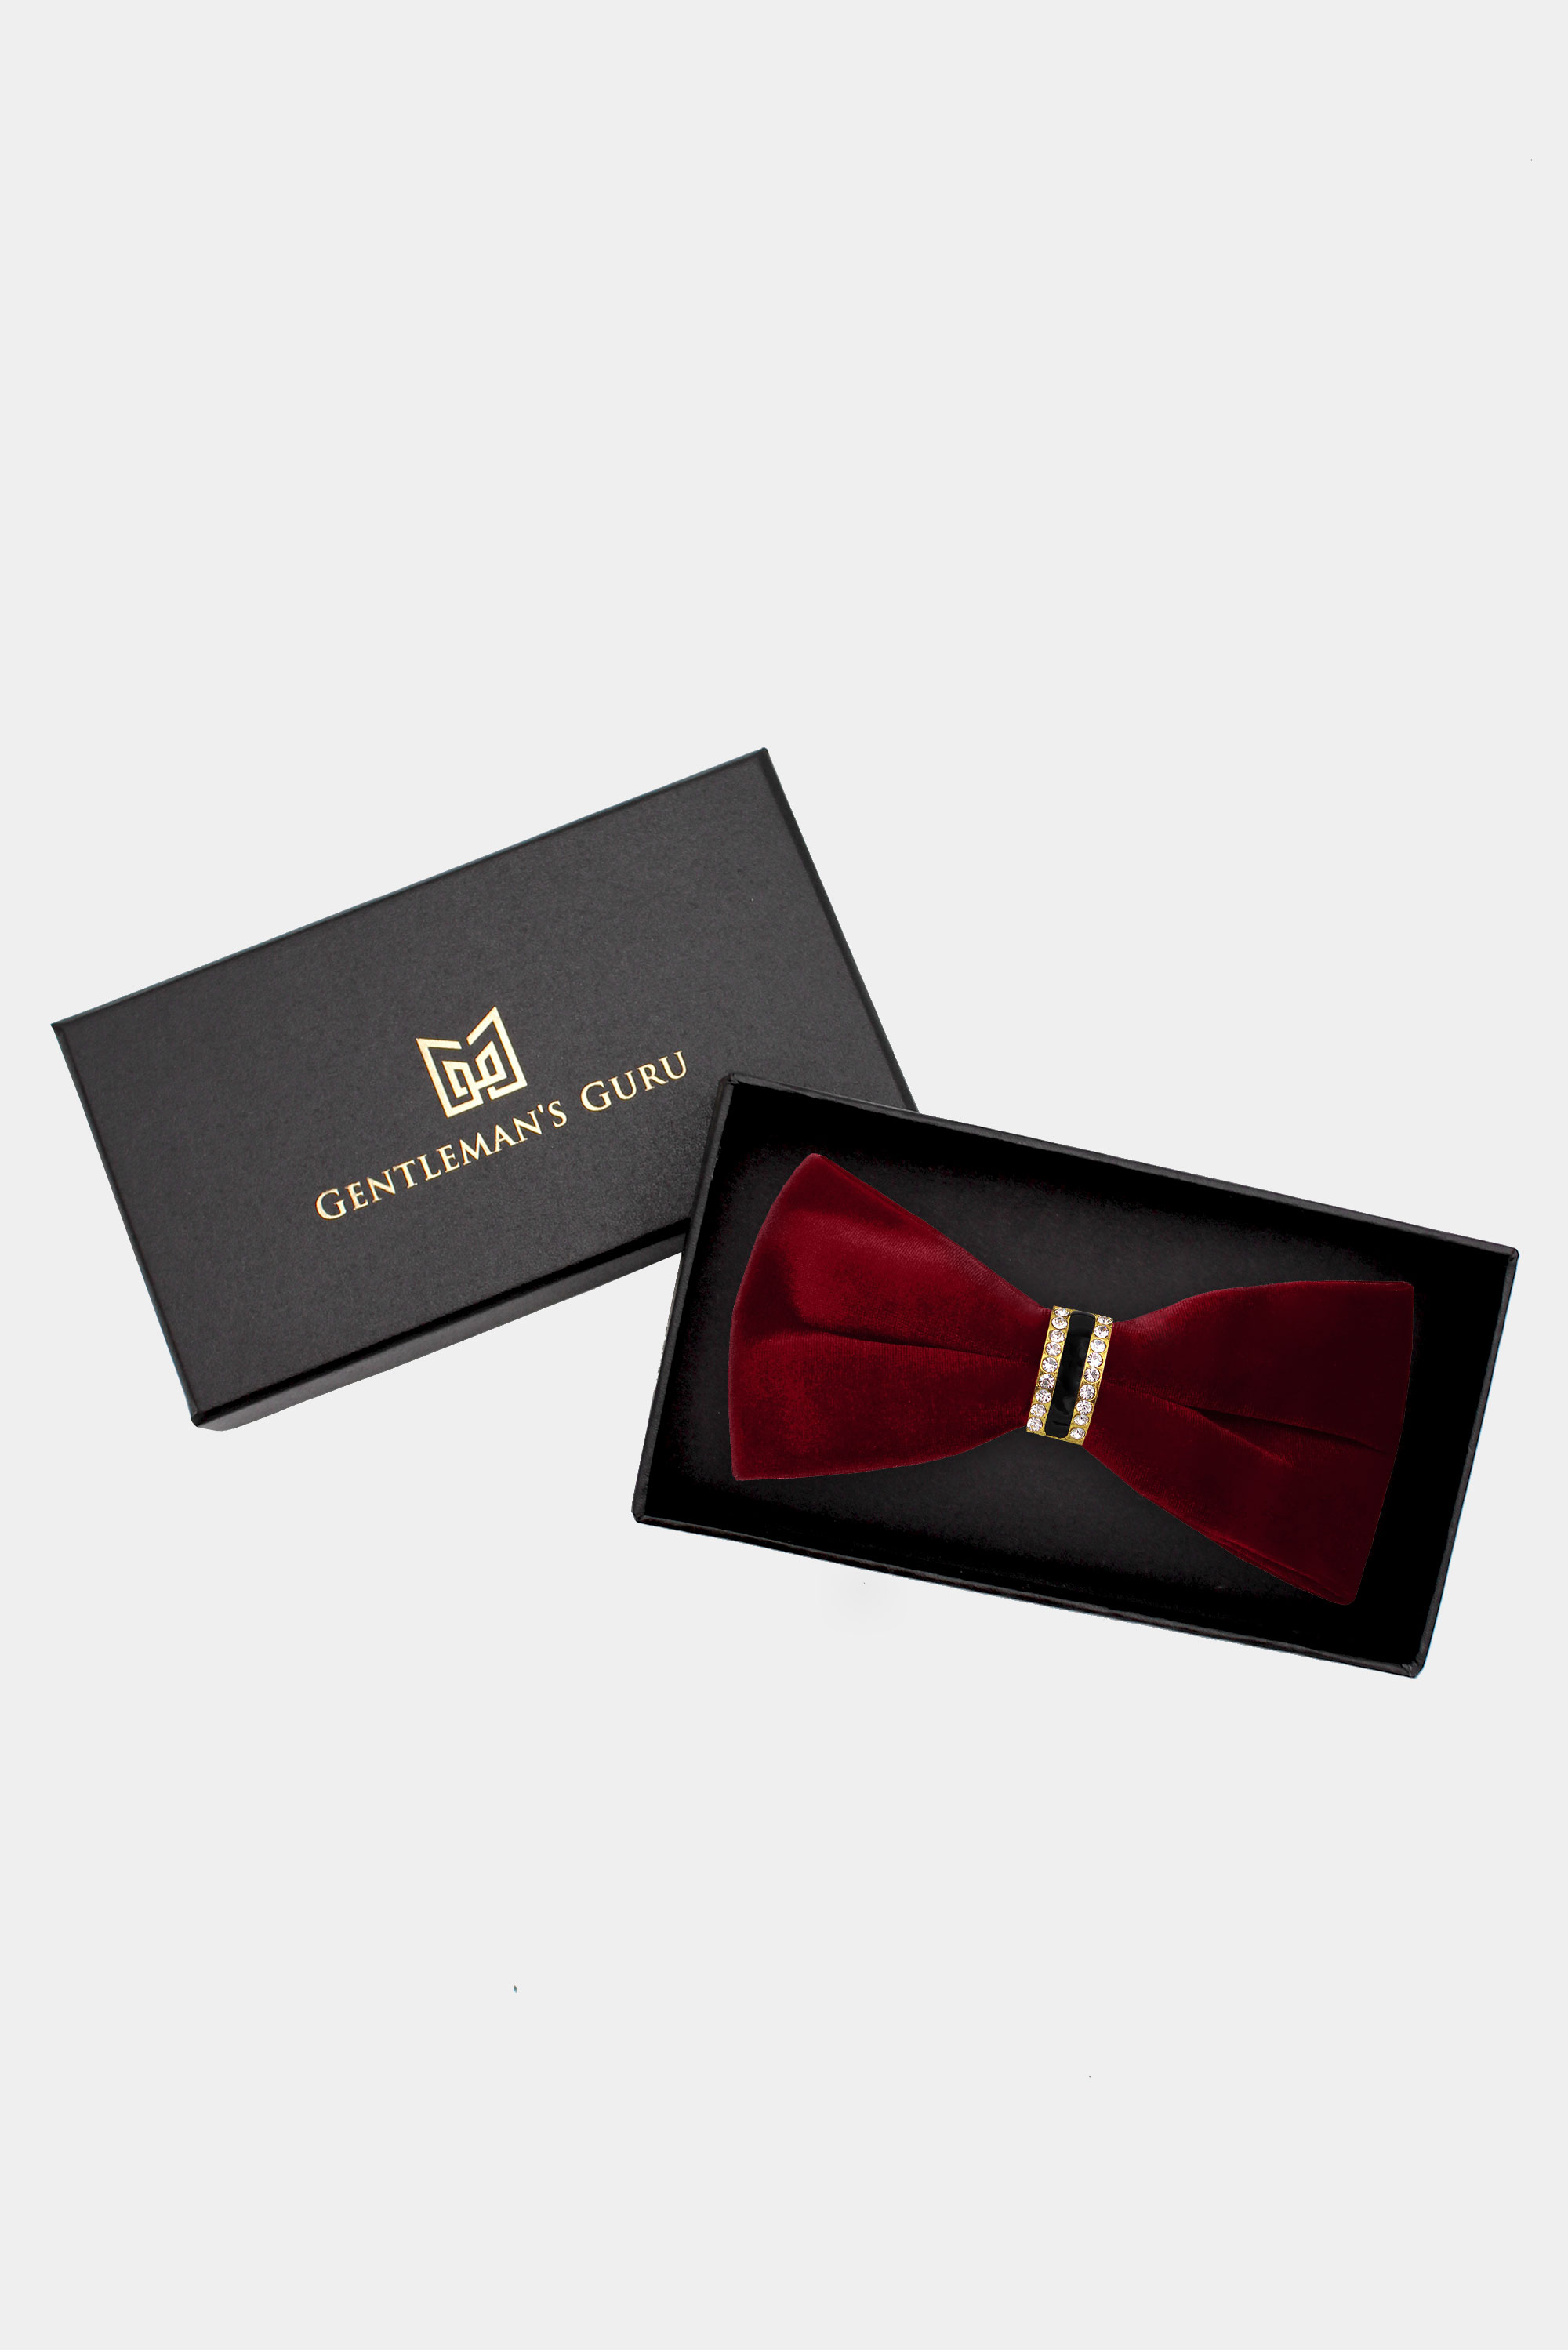 Luxury-Burgundy-Velvet-Bow-Tie-from-Gentlemansguru.com